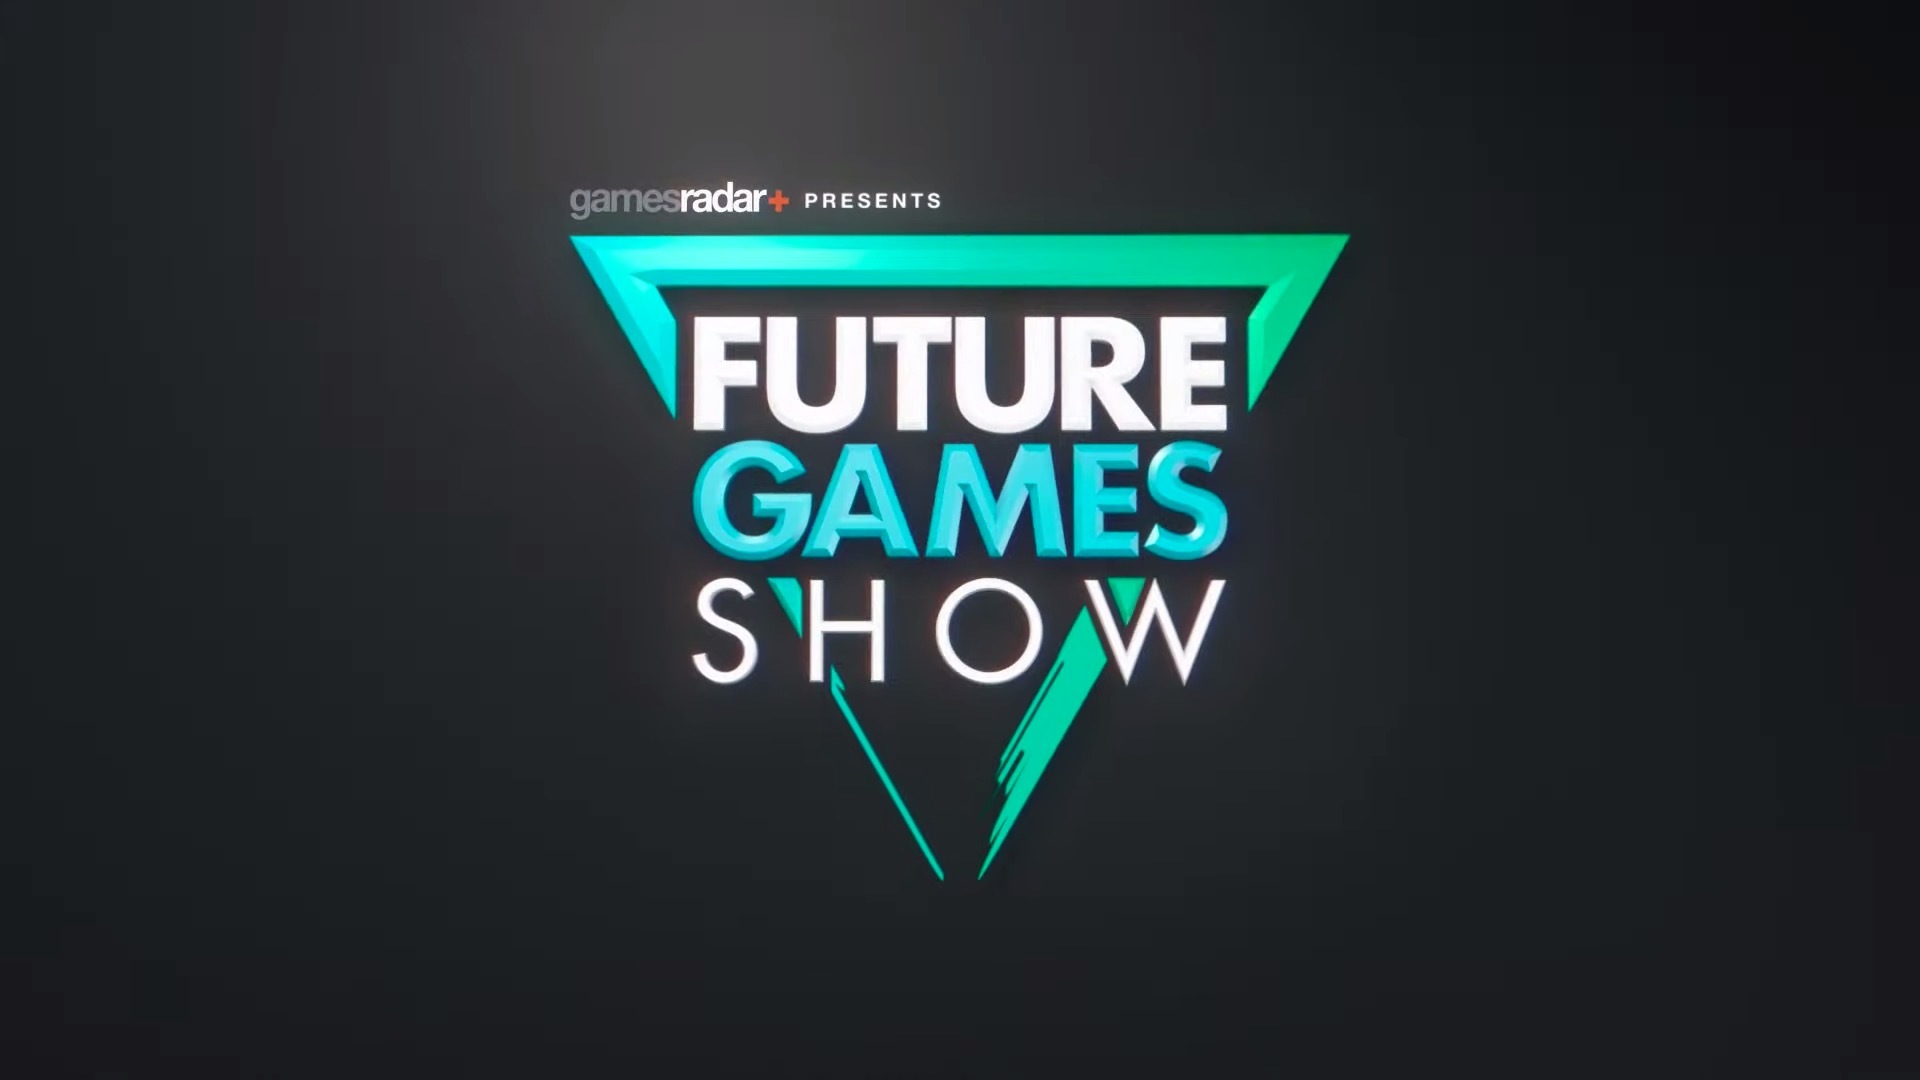 线上游戏发表会 Future Games Show 将于本周末举行 预计展